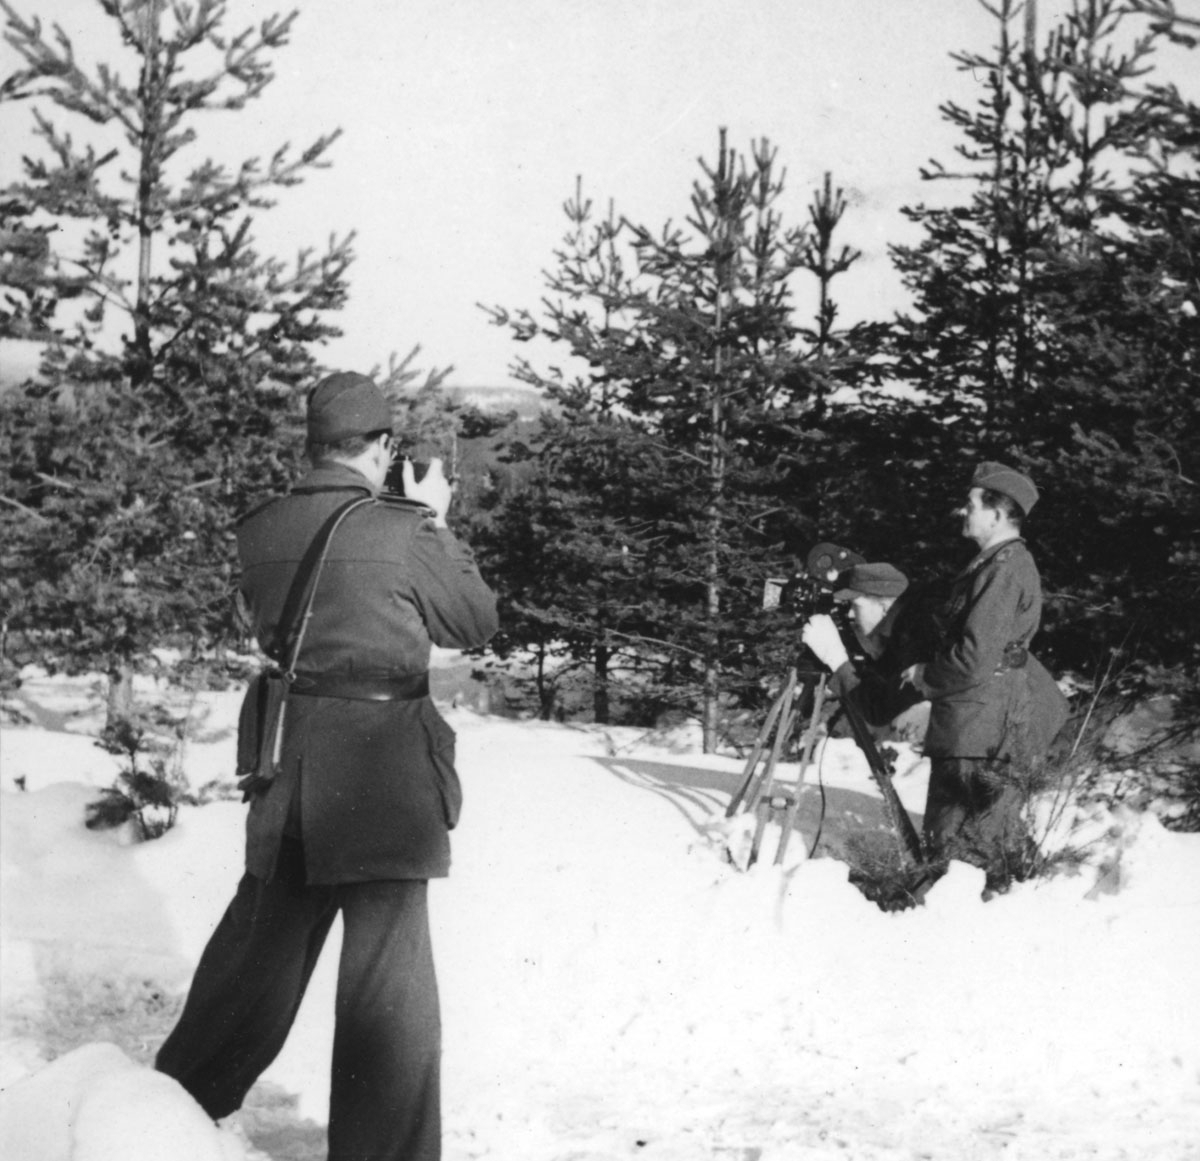 Patrullen från AMF i aktion framför filmkameran, vintern 1945.